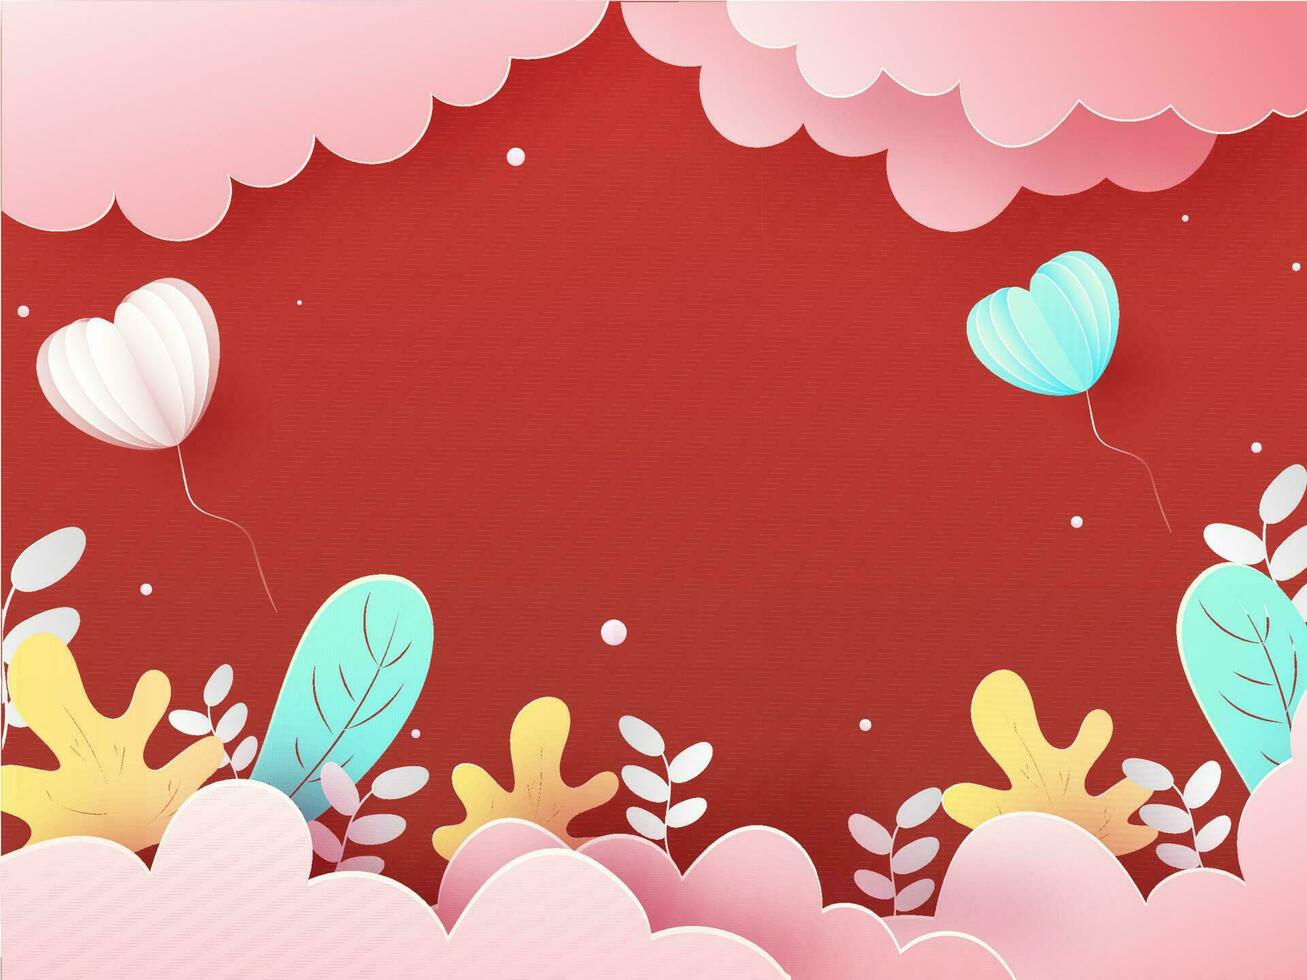 papier besnoeiing stijl bewolkt rood achtergrond met hart vormig ballonnen en herfst bladeren. vector